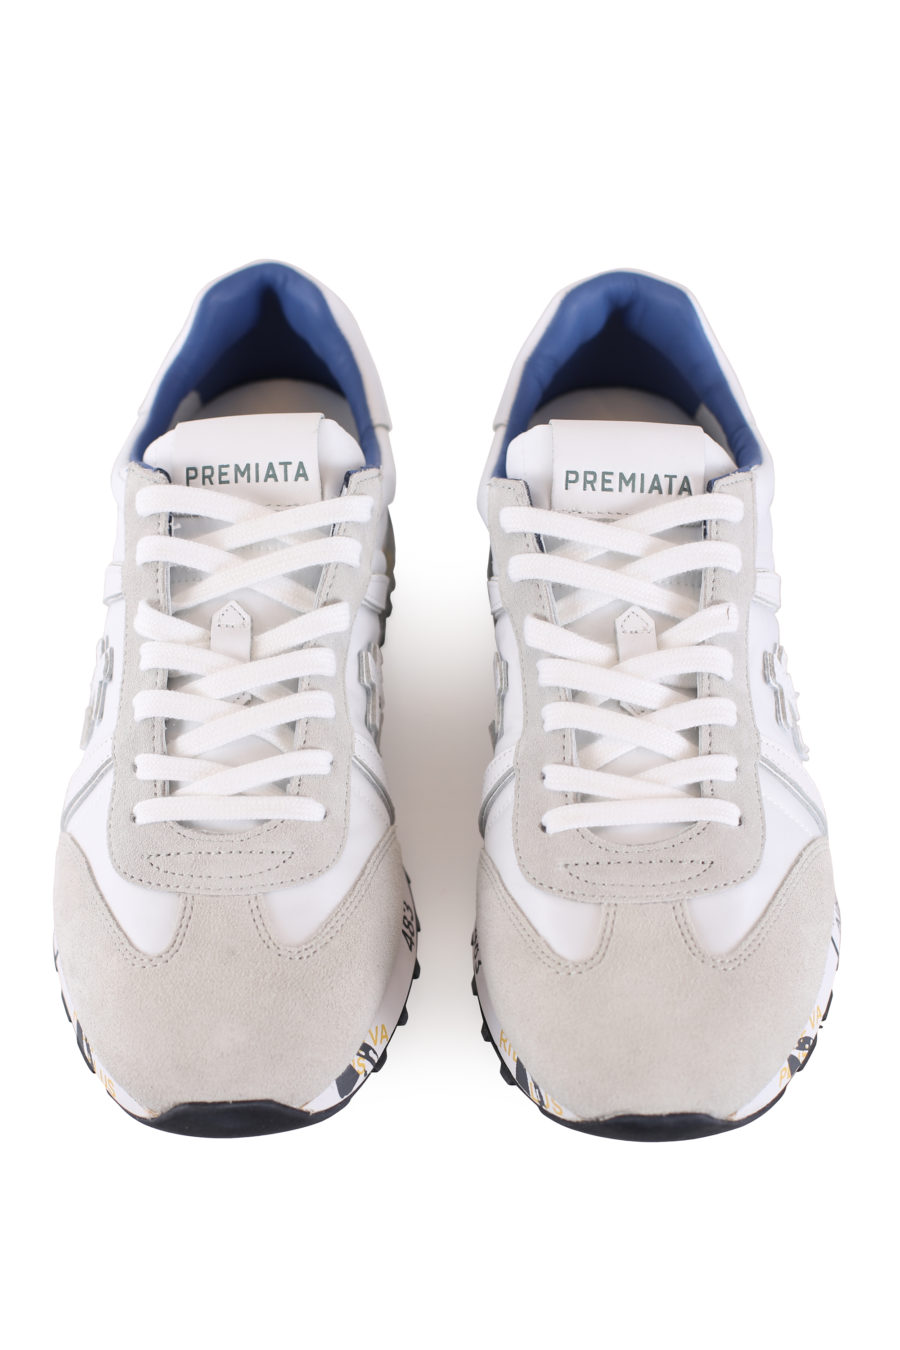 Zapatillas Blancas y gris con detalle azul "Lucy" - IMG 6965